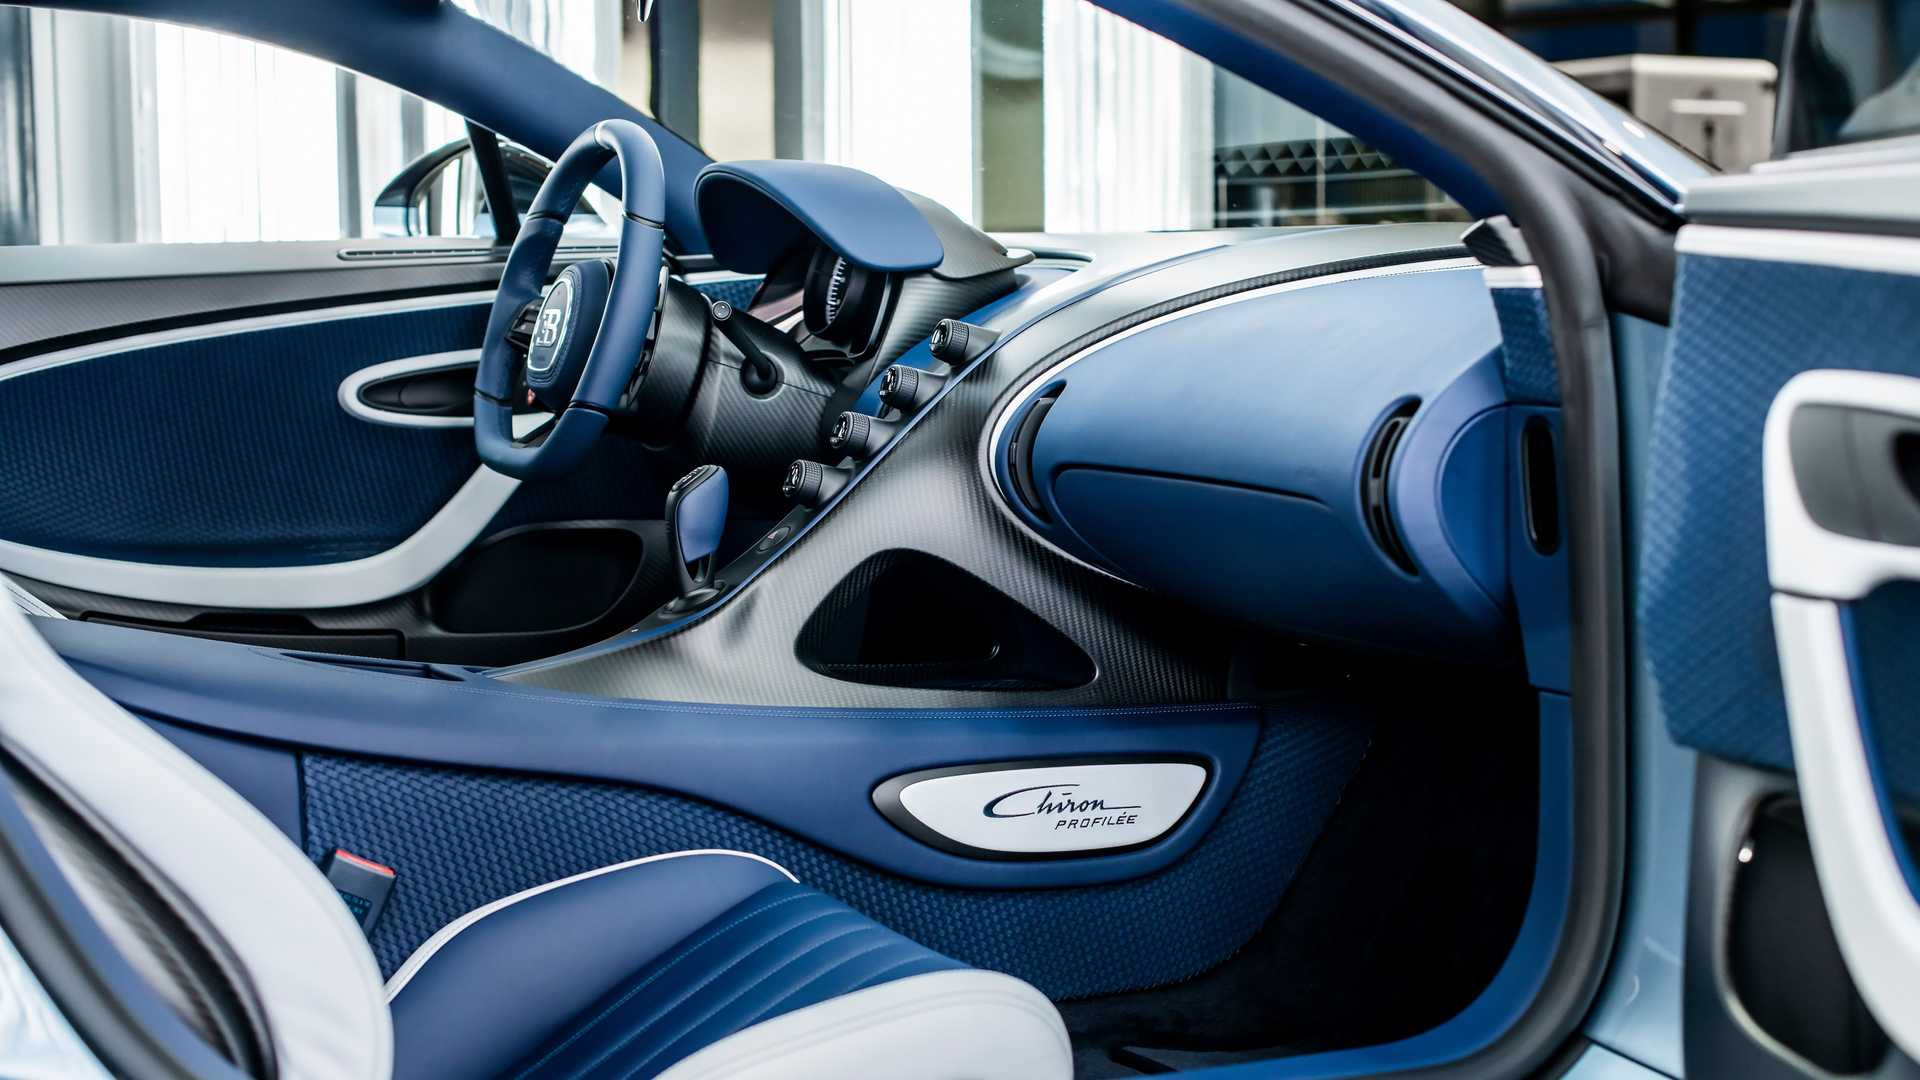 Kỷ lục xe đấu giá đắt nhất thế giới chạm mốc 300 tỉ đồng là Bugatti Chiron Profilee - Ảnh 12.